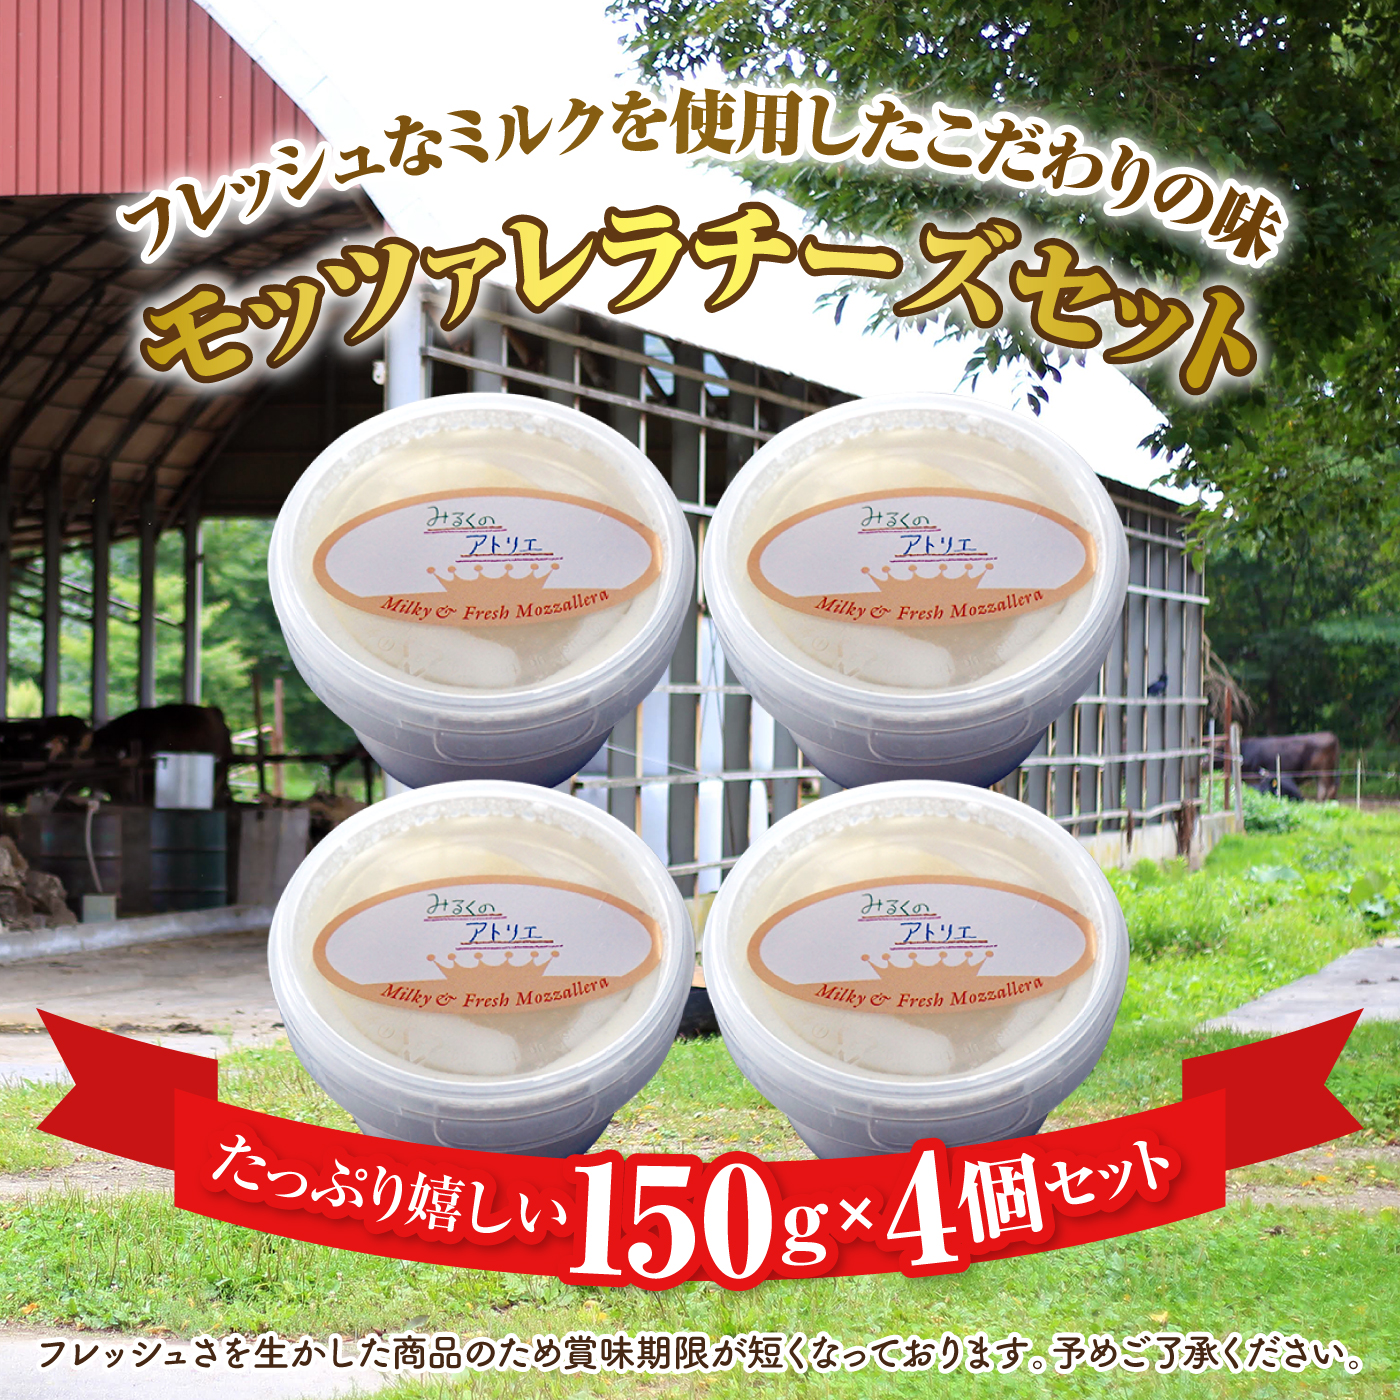 モッツァレラチーズ4個入セット【150003】